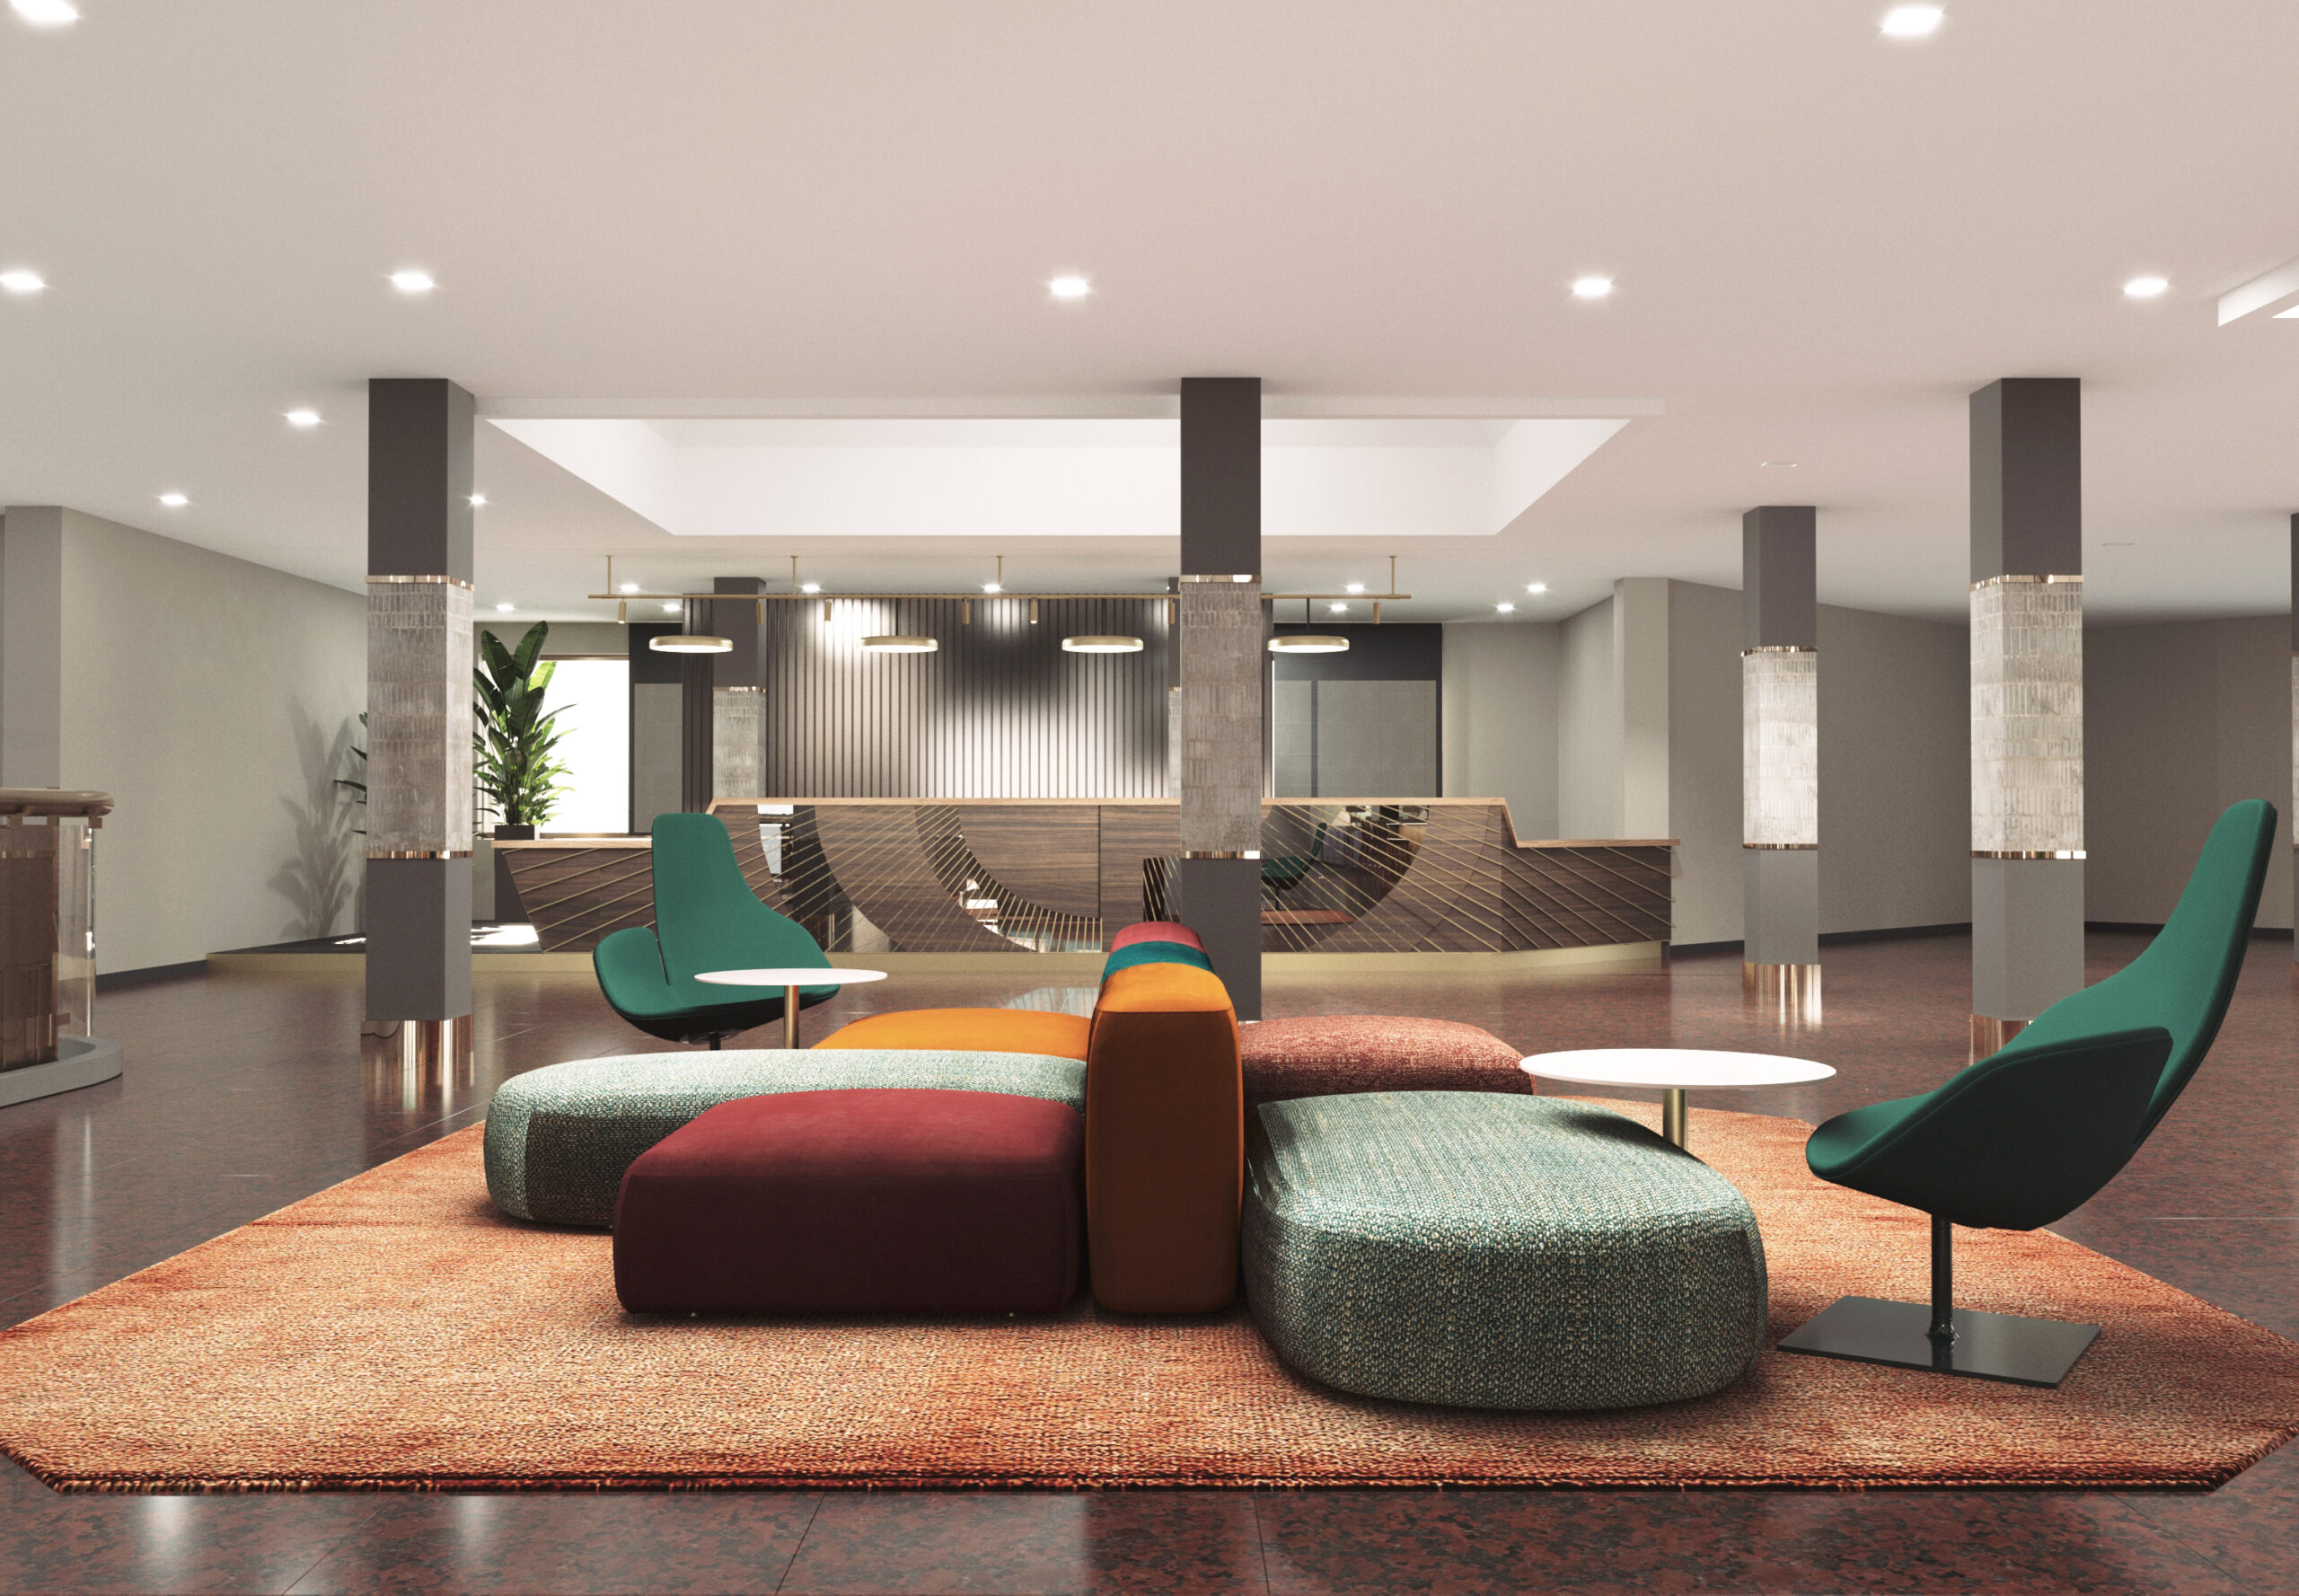 Dal Primo Aprile 2023 riapre il Quark Hotel Milano: l’ospitalità che guarda al futuro